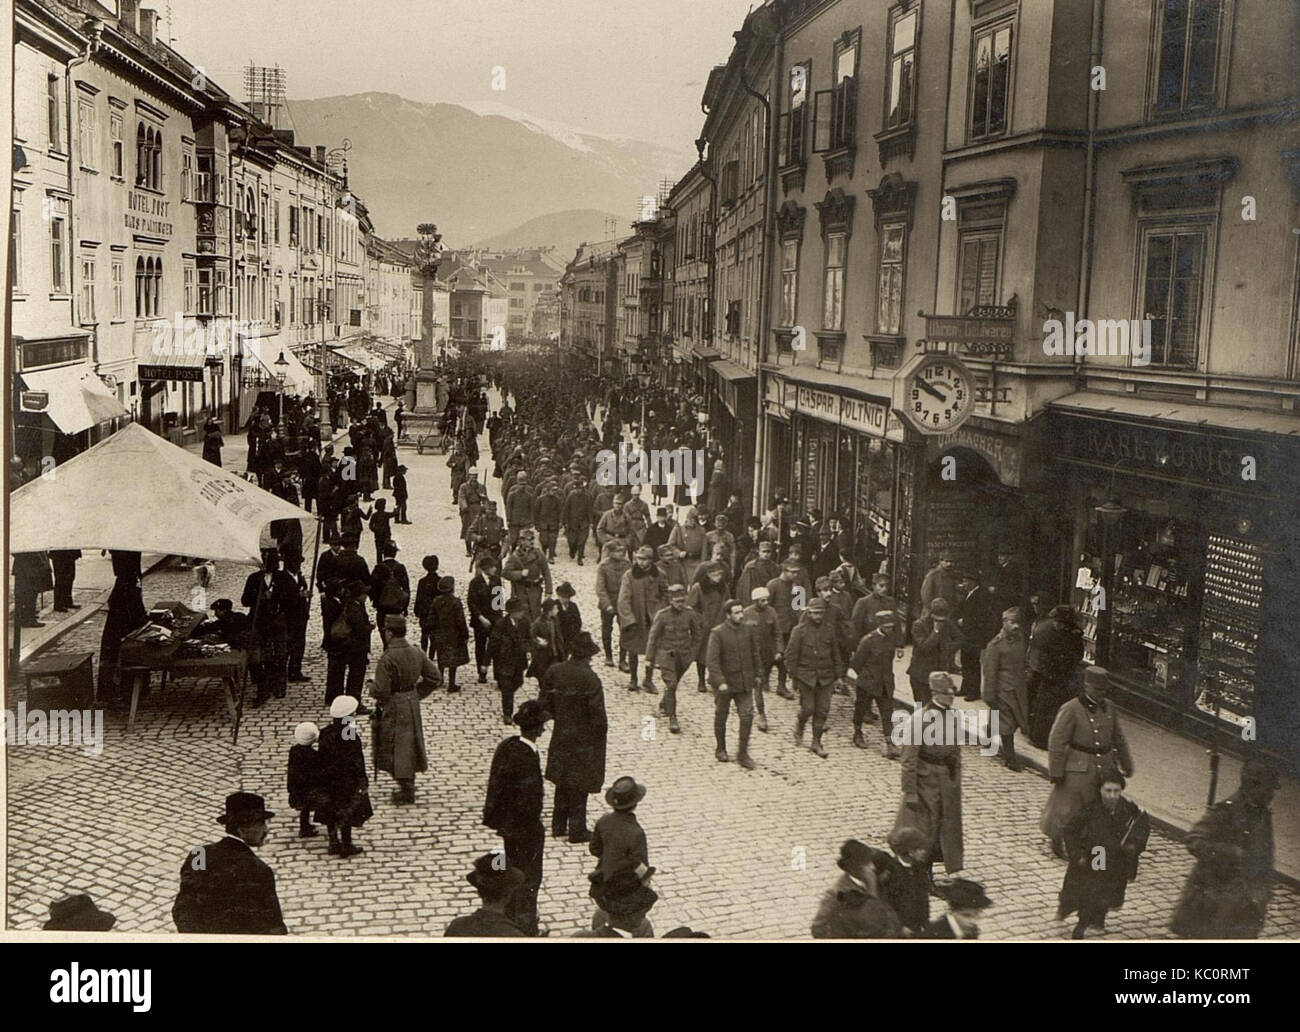 497 Mann, 16 Offiziere in Villach, die bei Santa Lucia am 17.III.1916 gefangen genommen wurden (BildID 15469999) Stock Photo